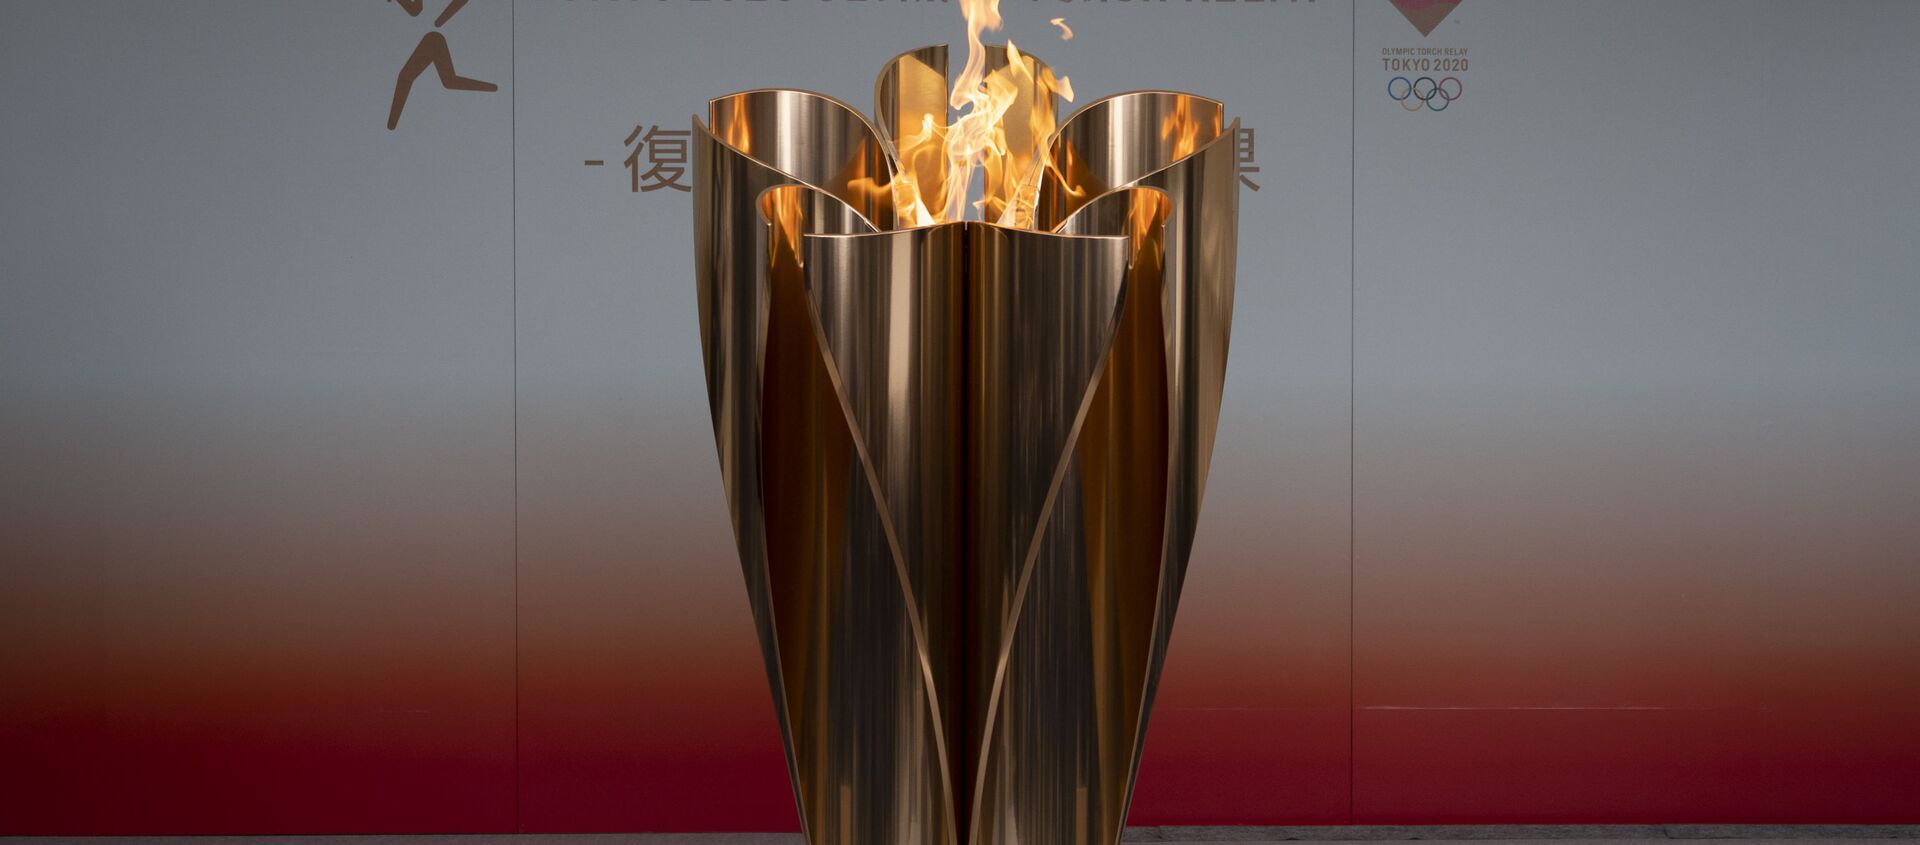 Ngọn lửa Olympic ở thành phố Fukushima, Nhật Bản. - Sputnik Việt Nam, 1920, 15.03.2021